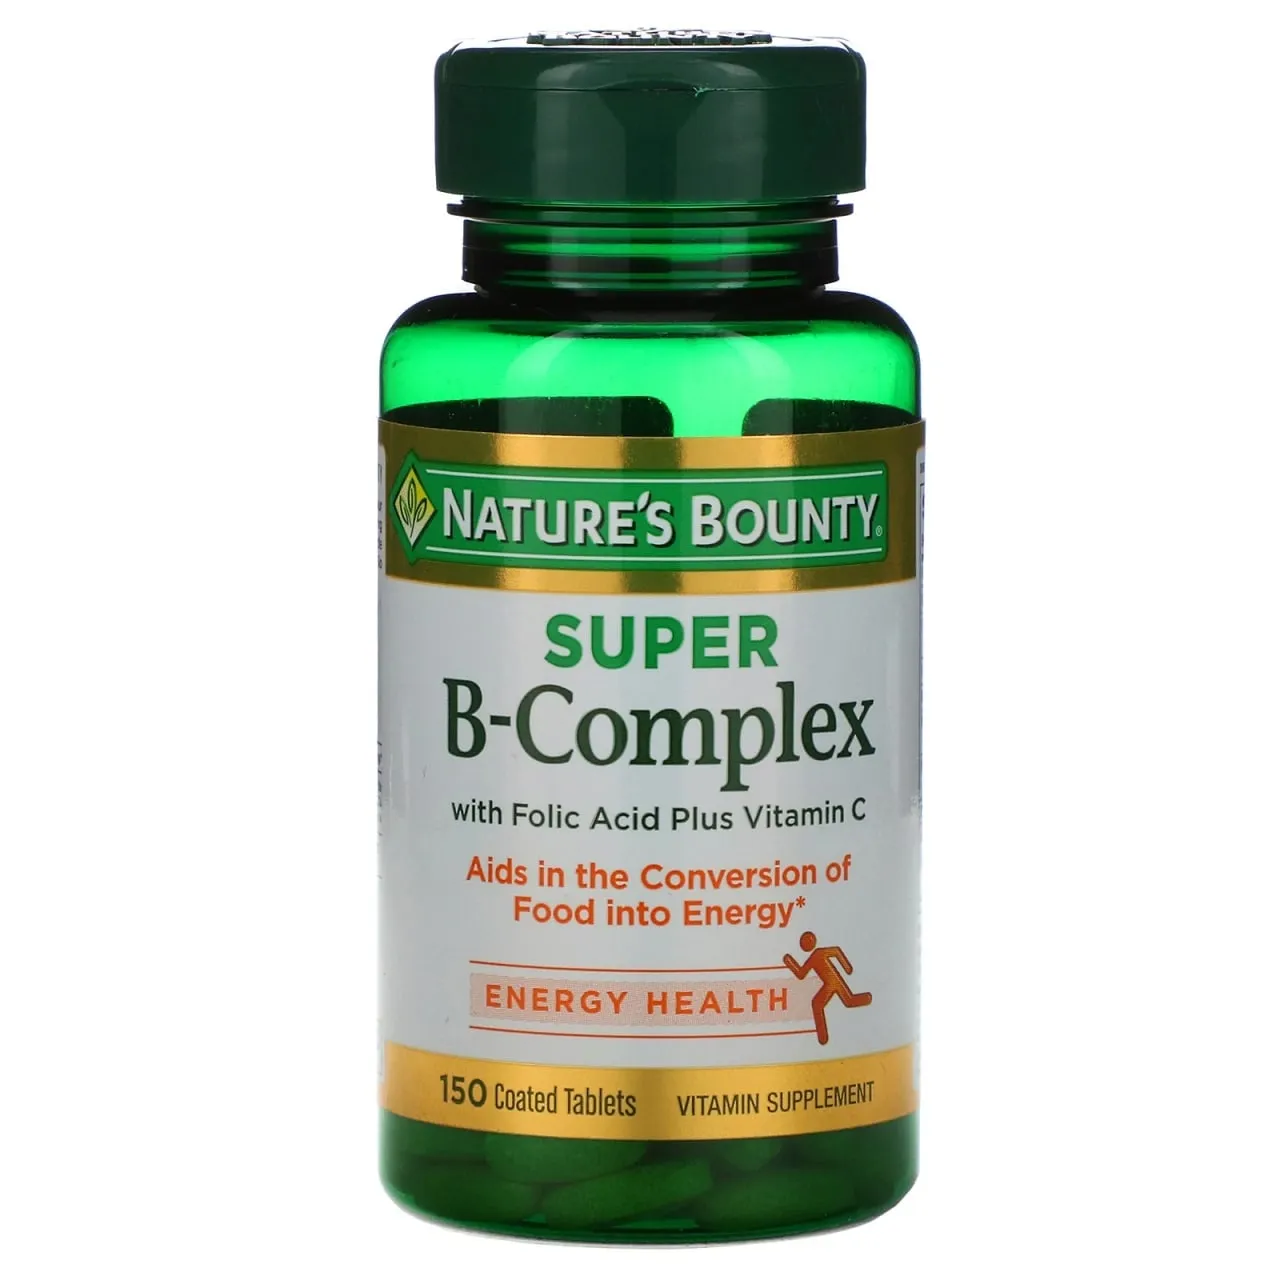 Tabiatning ne'mati, foliy kislotasi va S vitamini bilan super vitamin B kompleksi, 150 tabletka#1